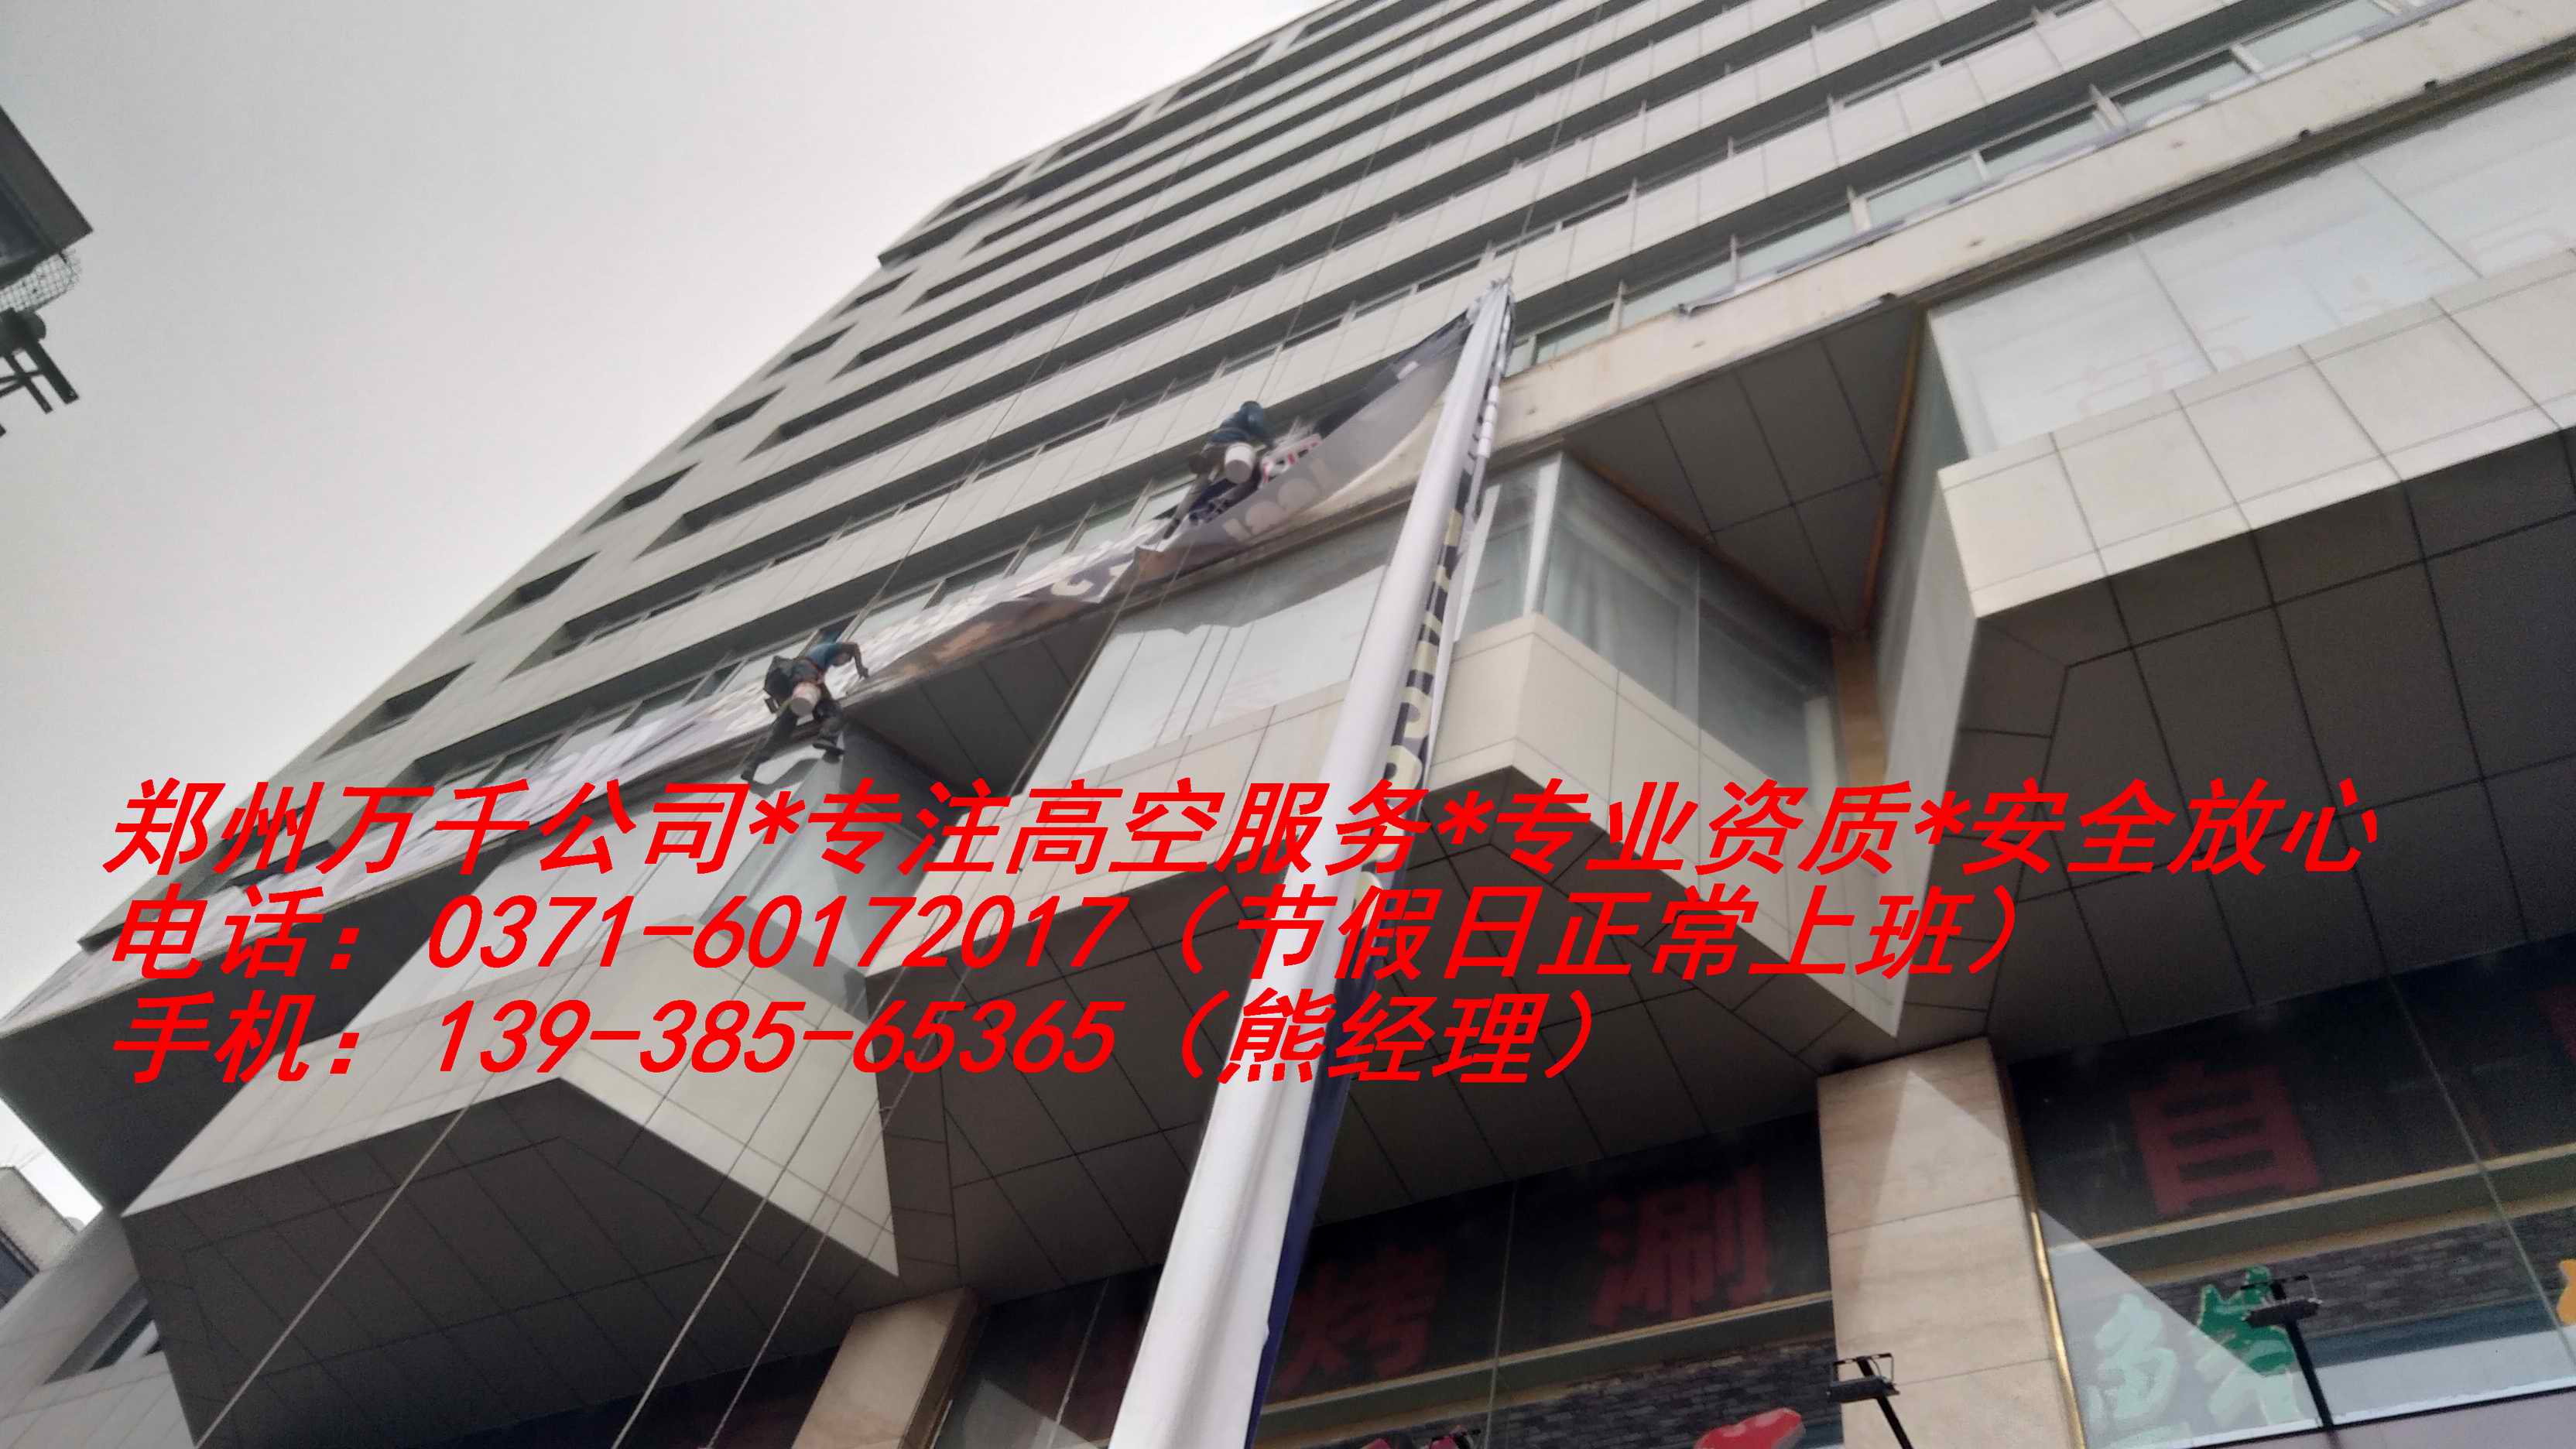 郑州高空下水管道安装公司服务报价电话号码13938565365